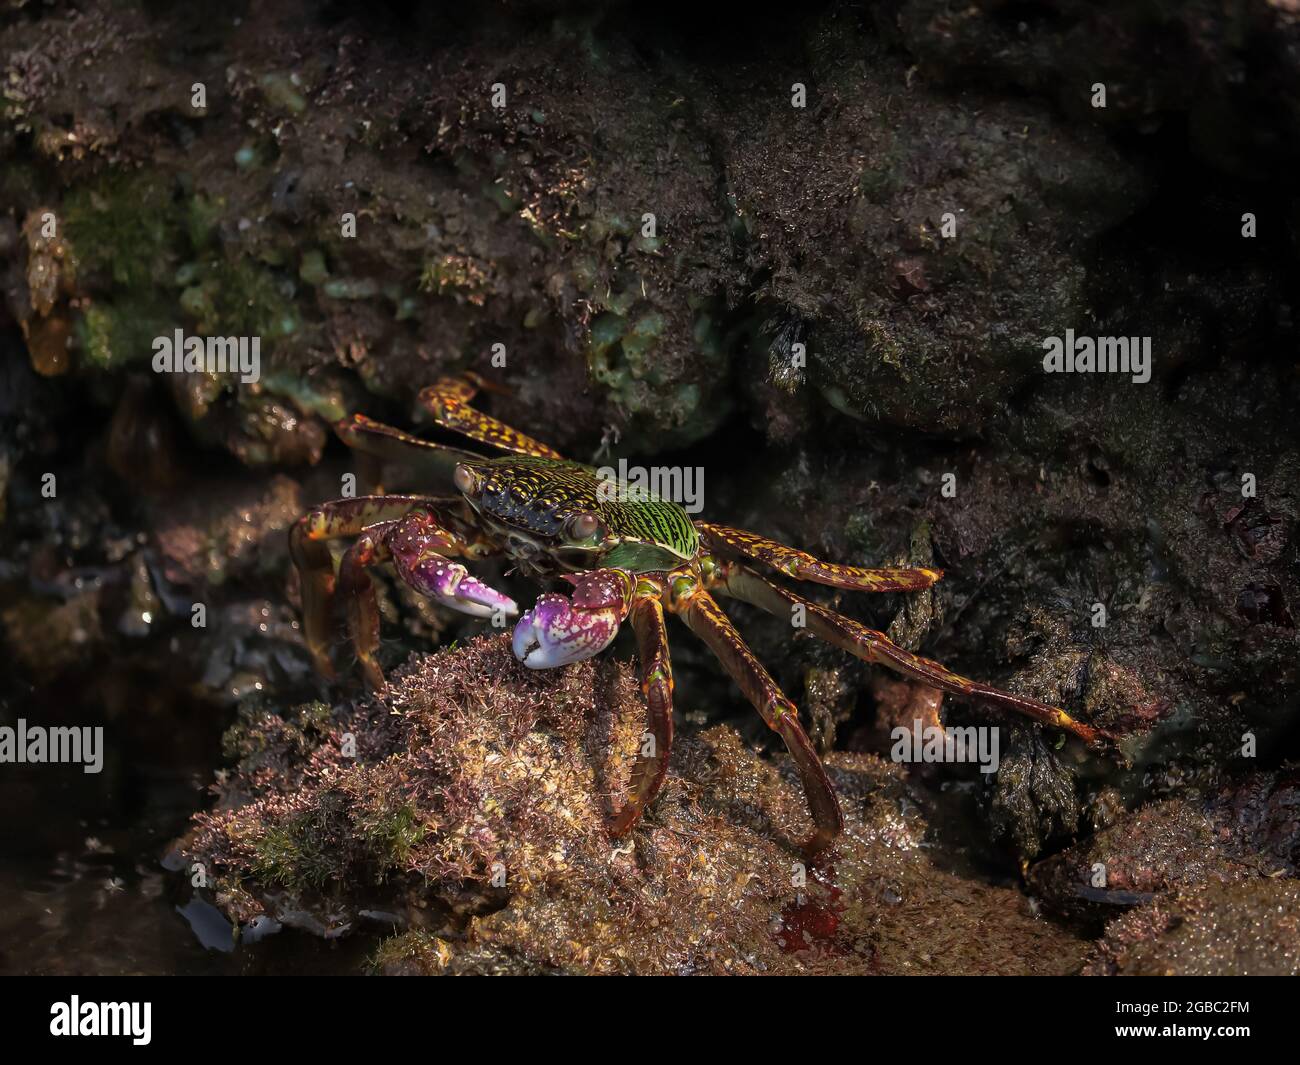 Foto der Krabbe auf dem Felsen, Essen, Meeresrauschen Stockfoto